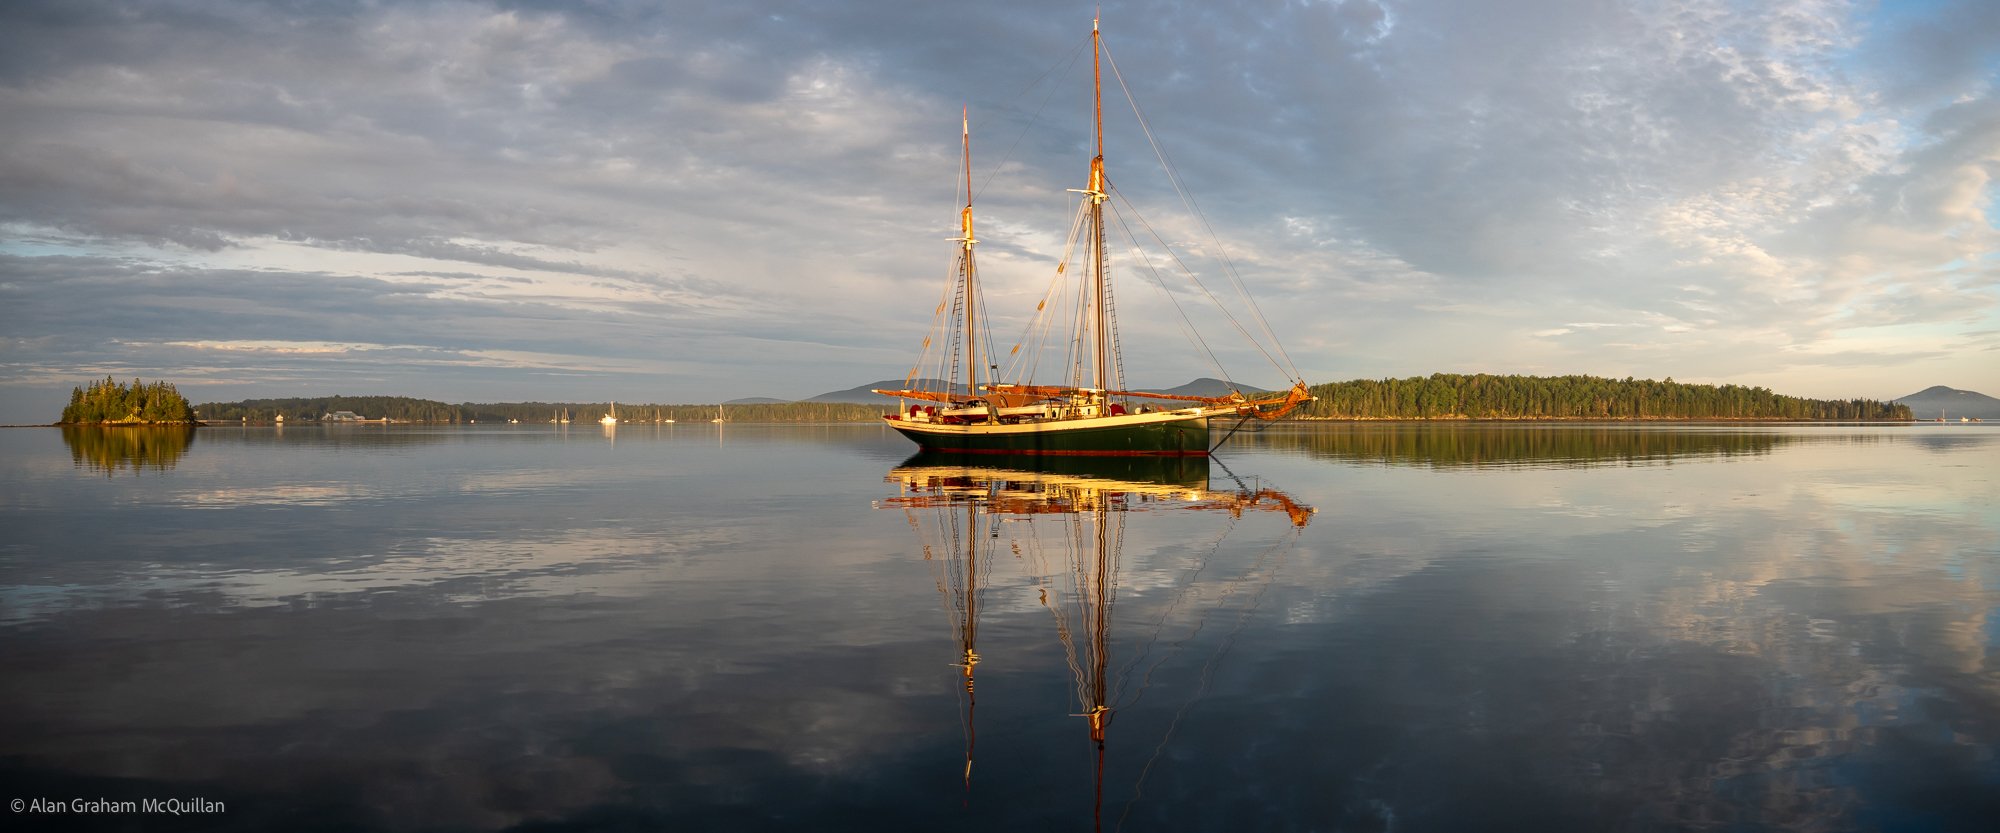 Schooner Angelique, Gilkey Harbor, Penobscot Bay, Maine